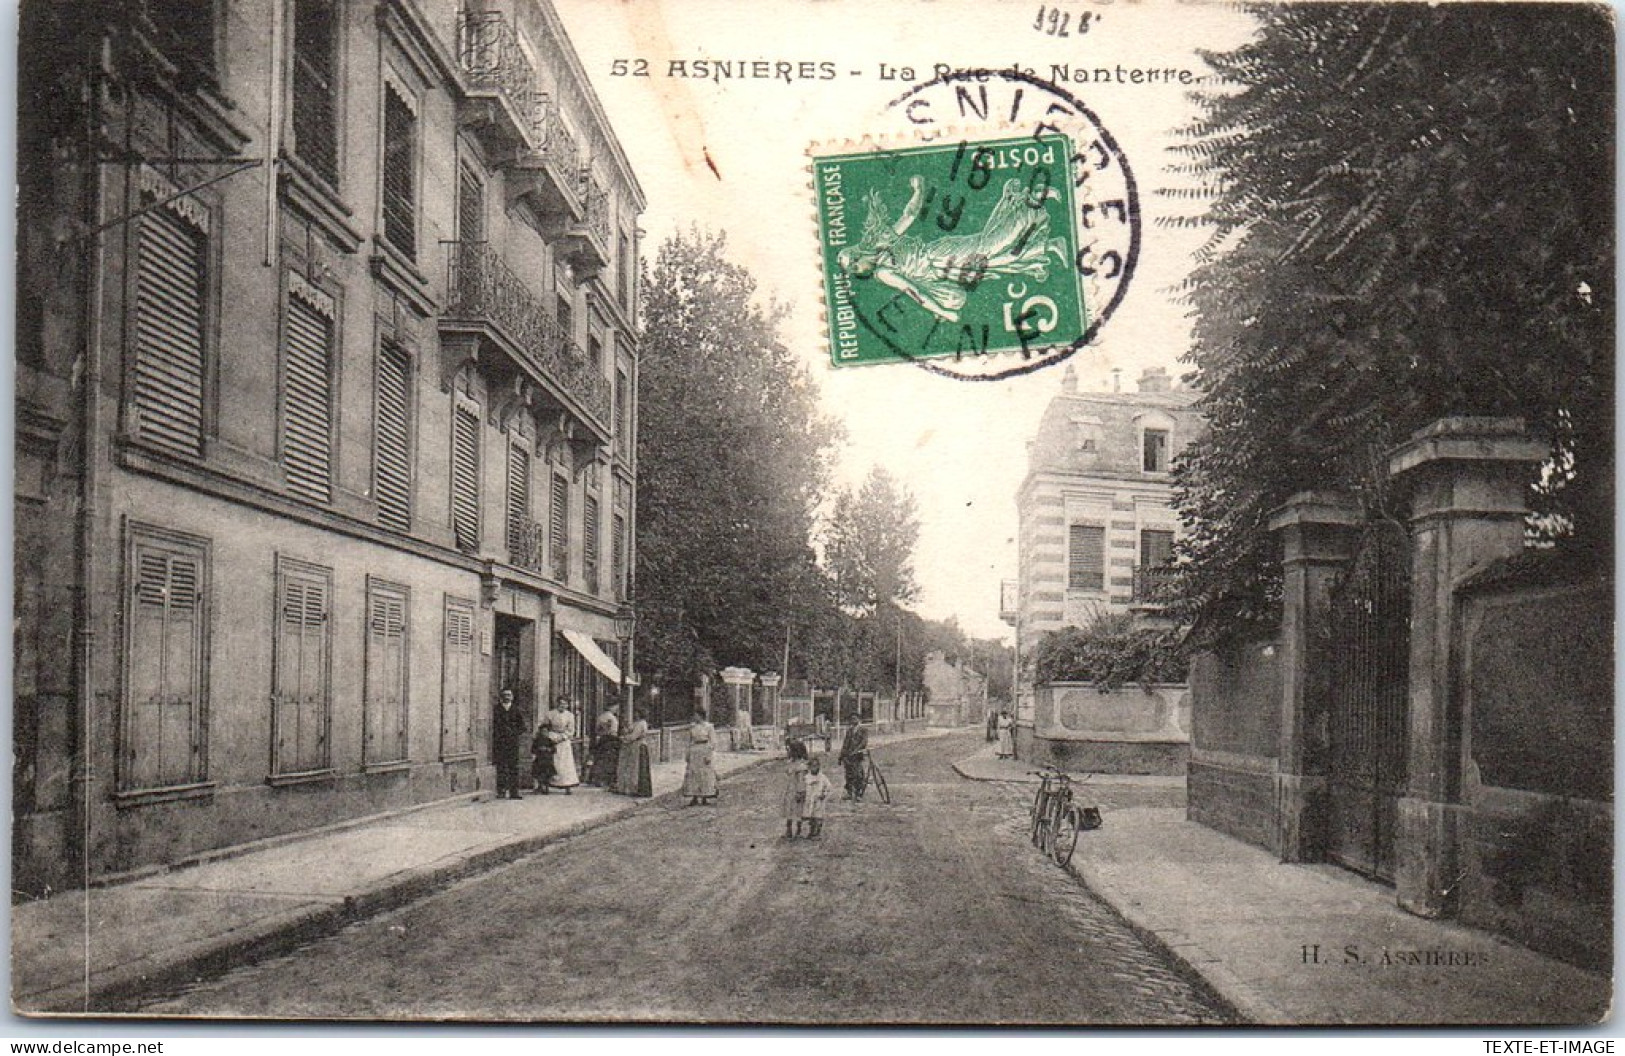 92 ASNIERES SUR SEINE - La Rue De Nanterre  - Asnieres Sur Seine